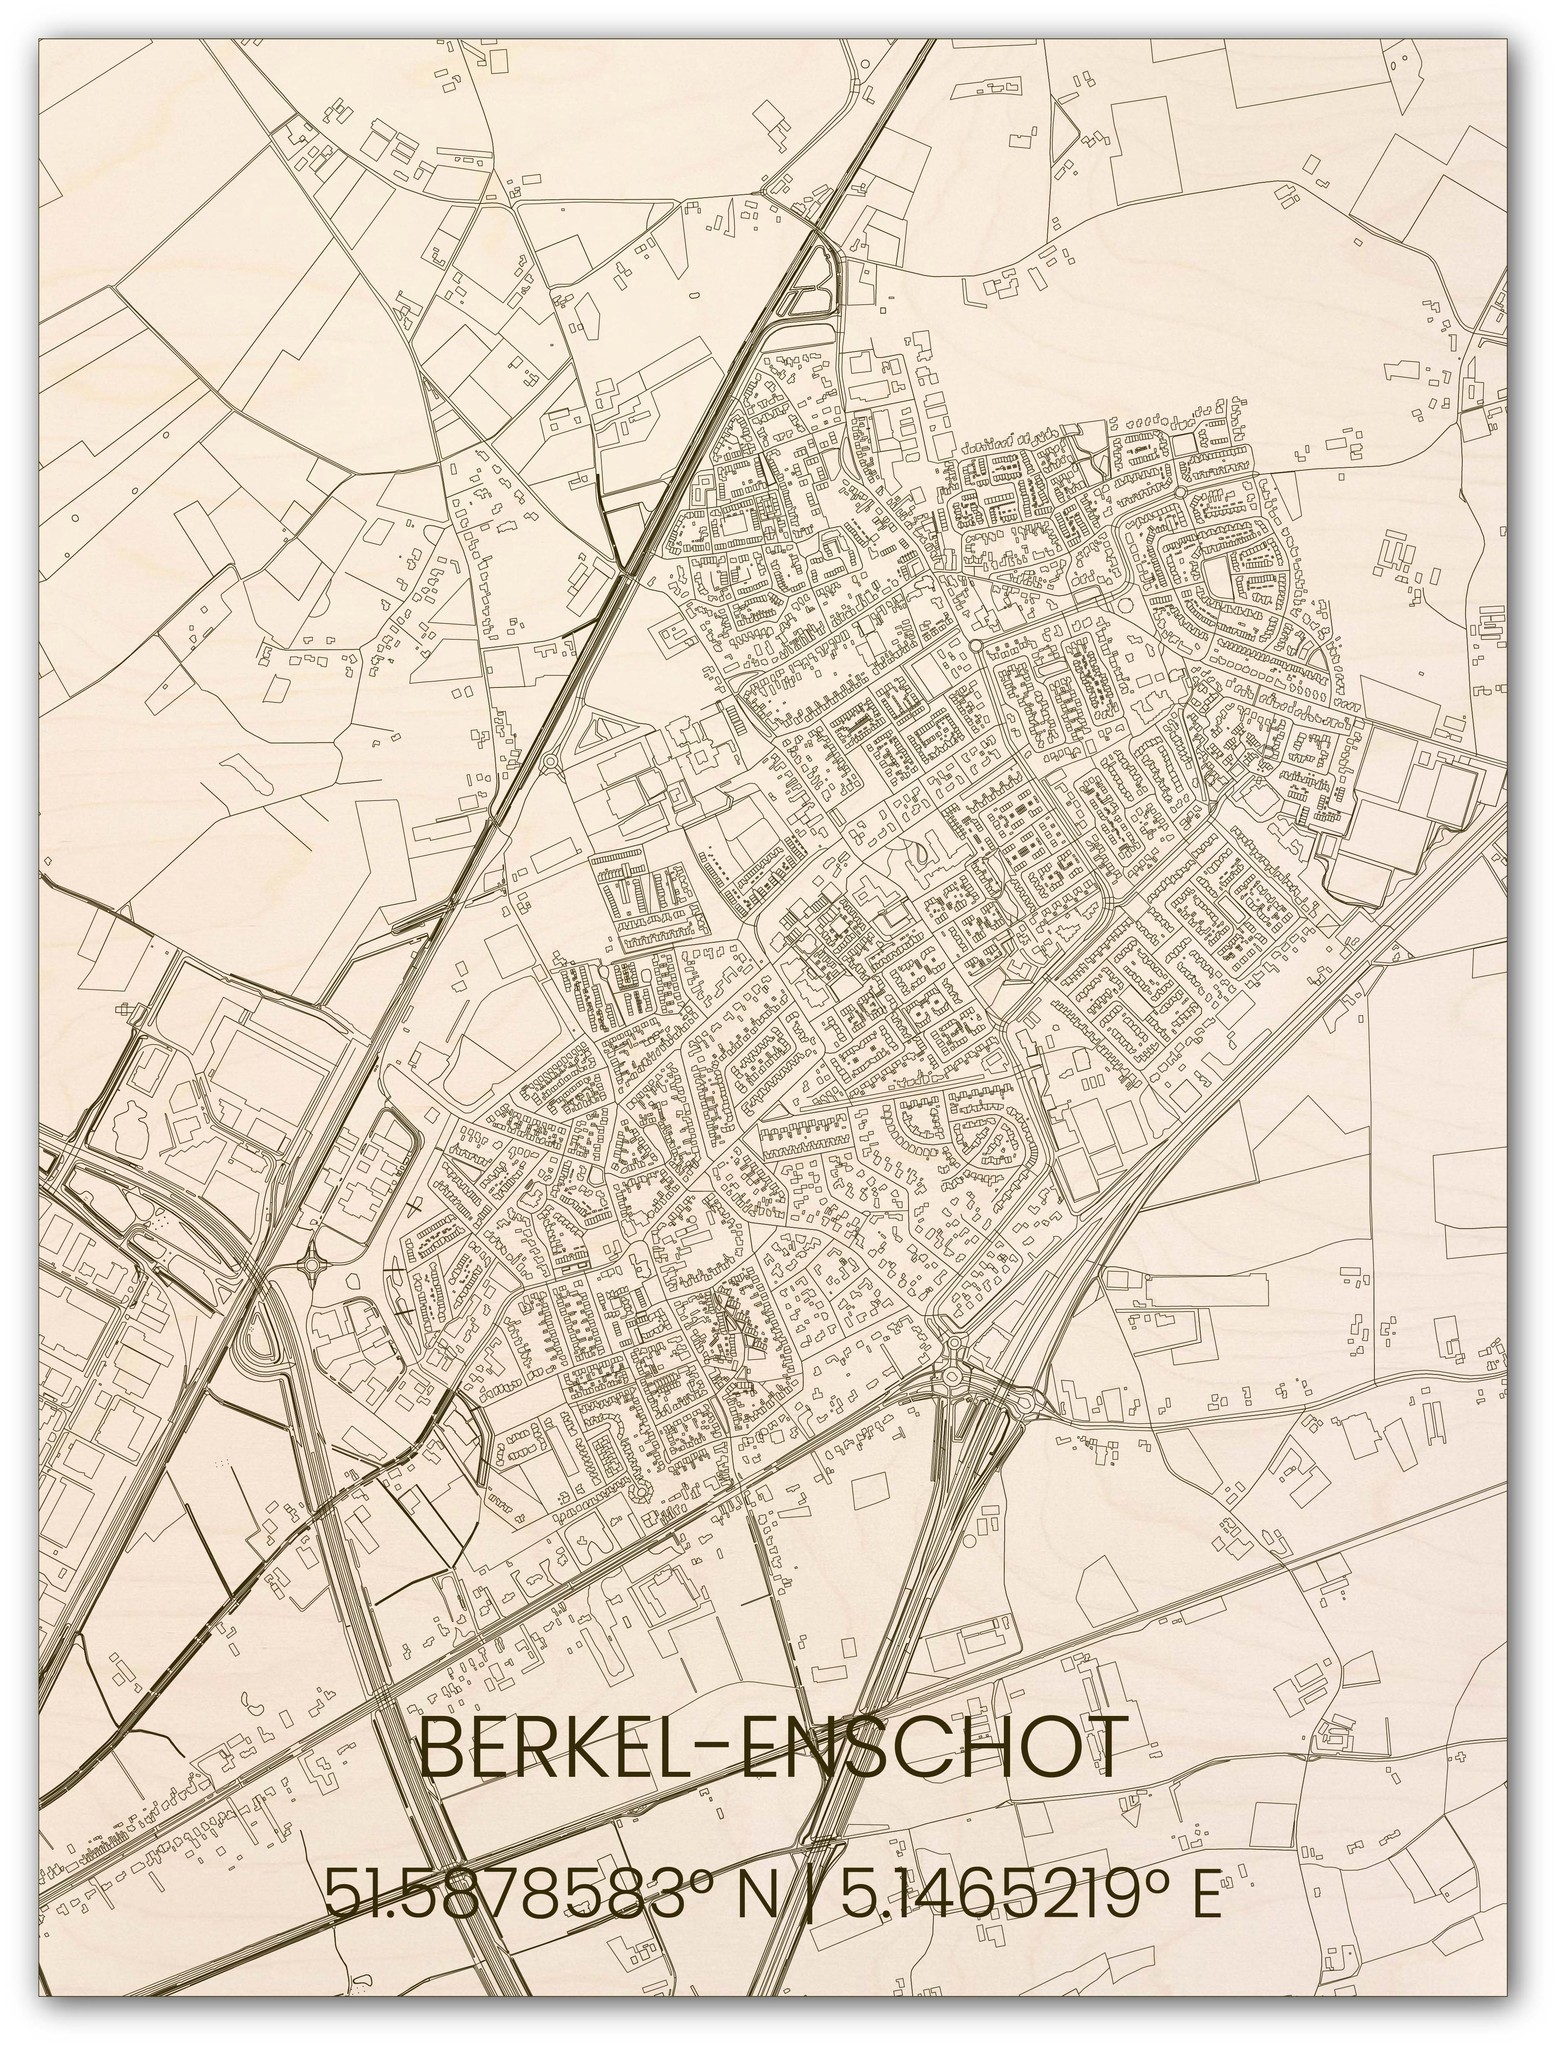 Houten stadsplattegrond Berkel-Enschot-1